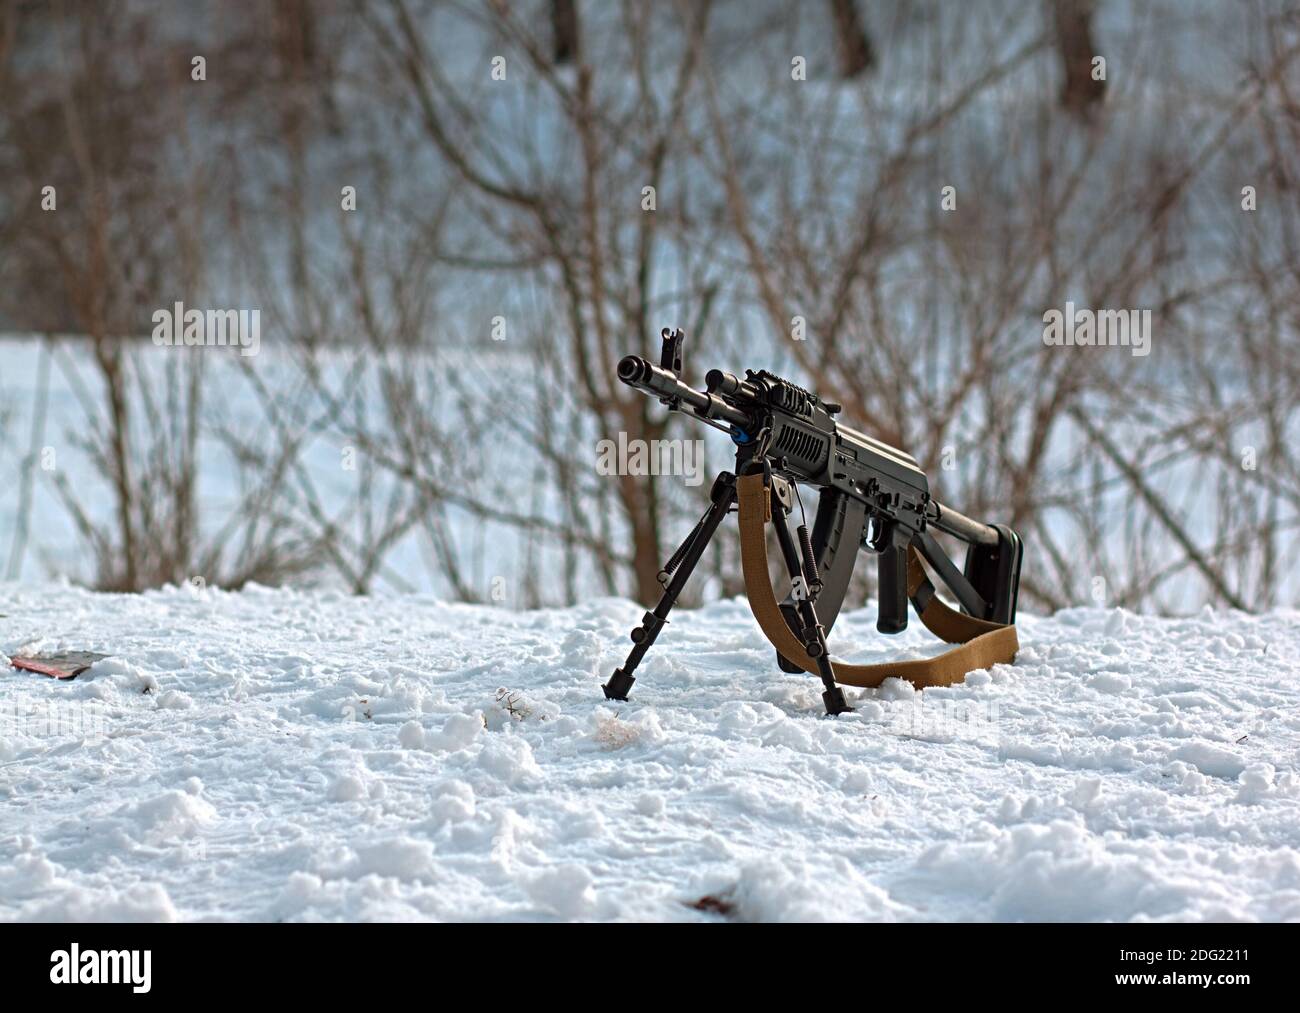 Gun AK-47 Stock Photo